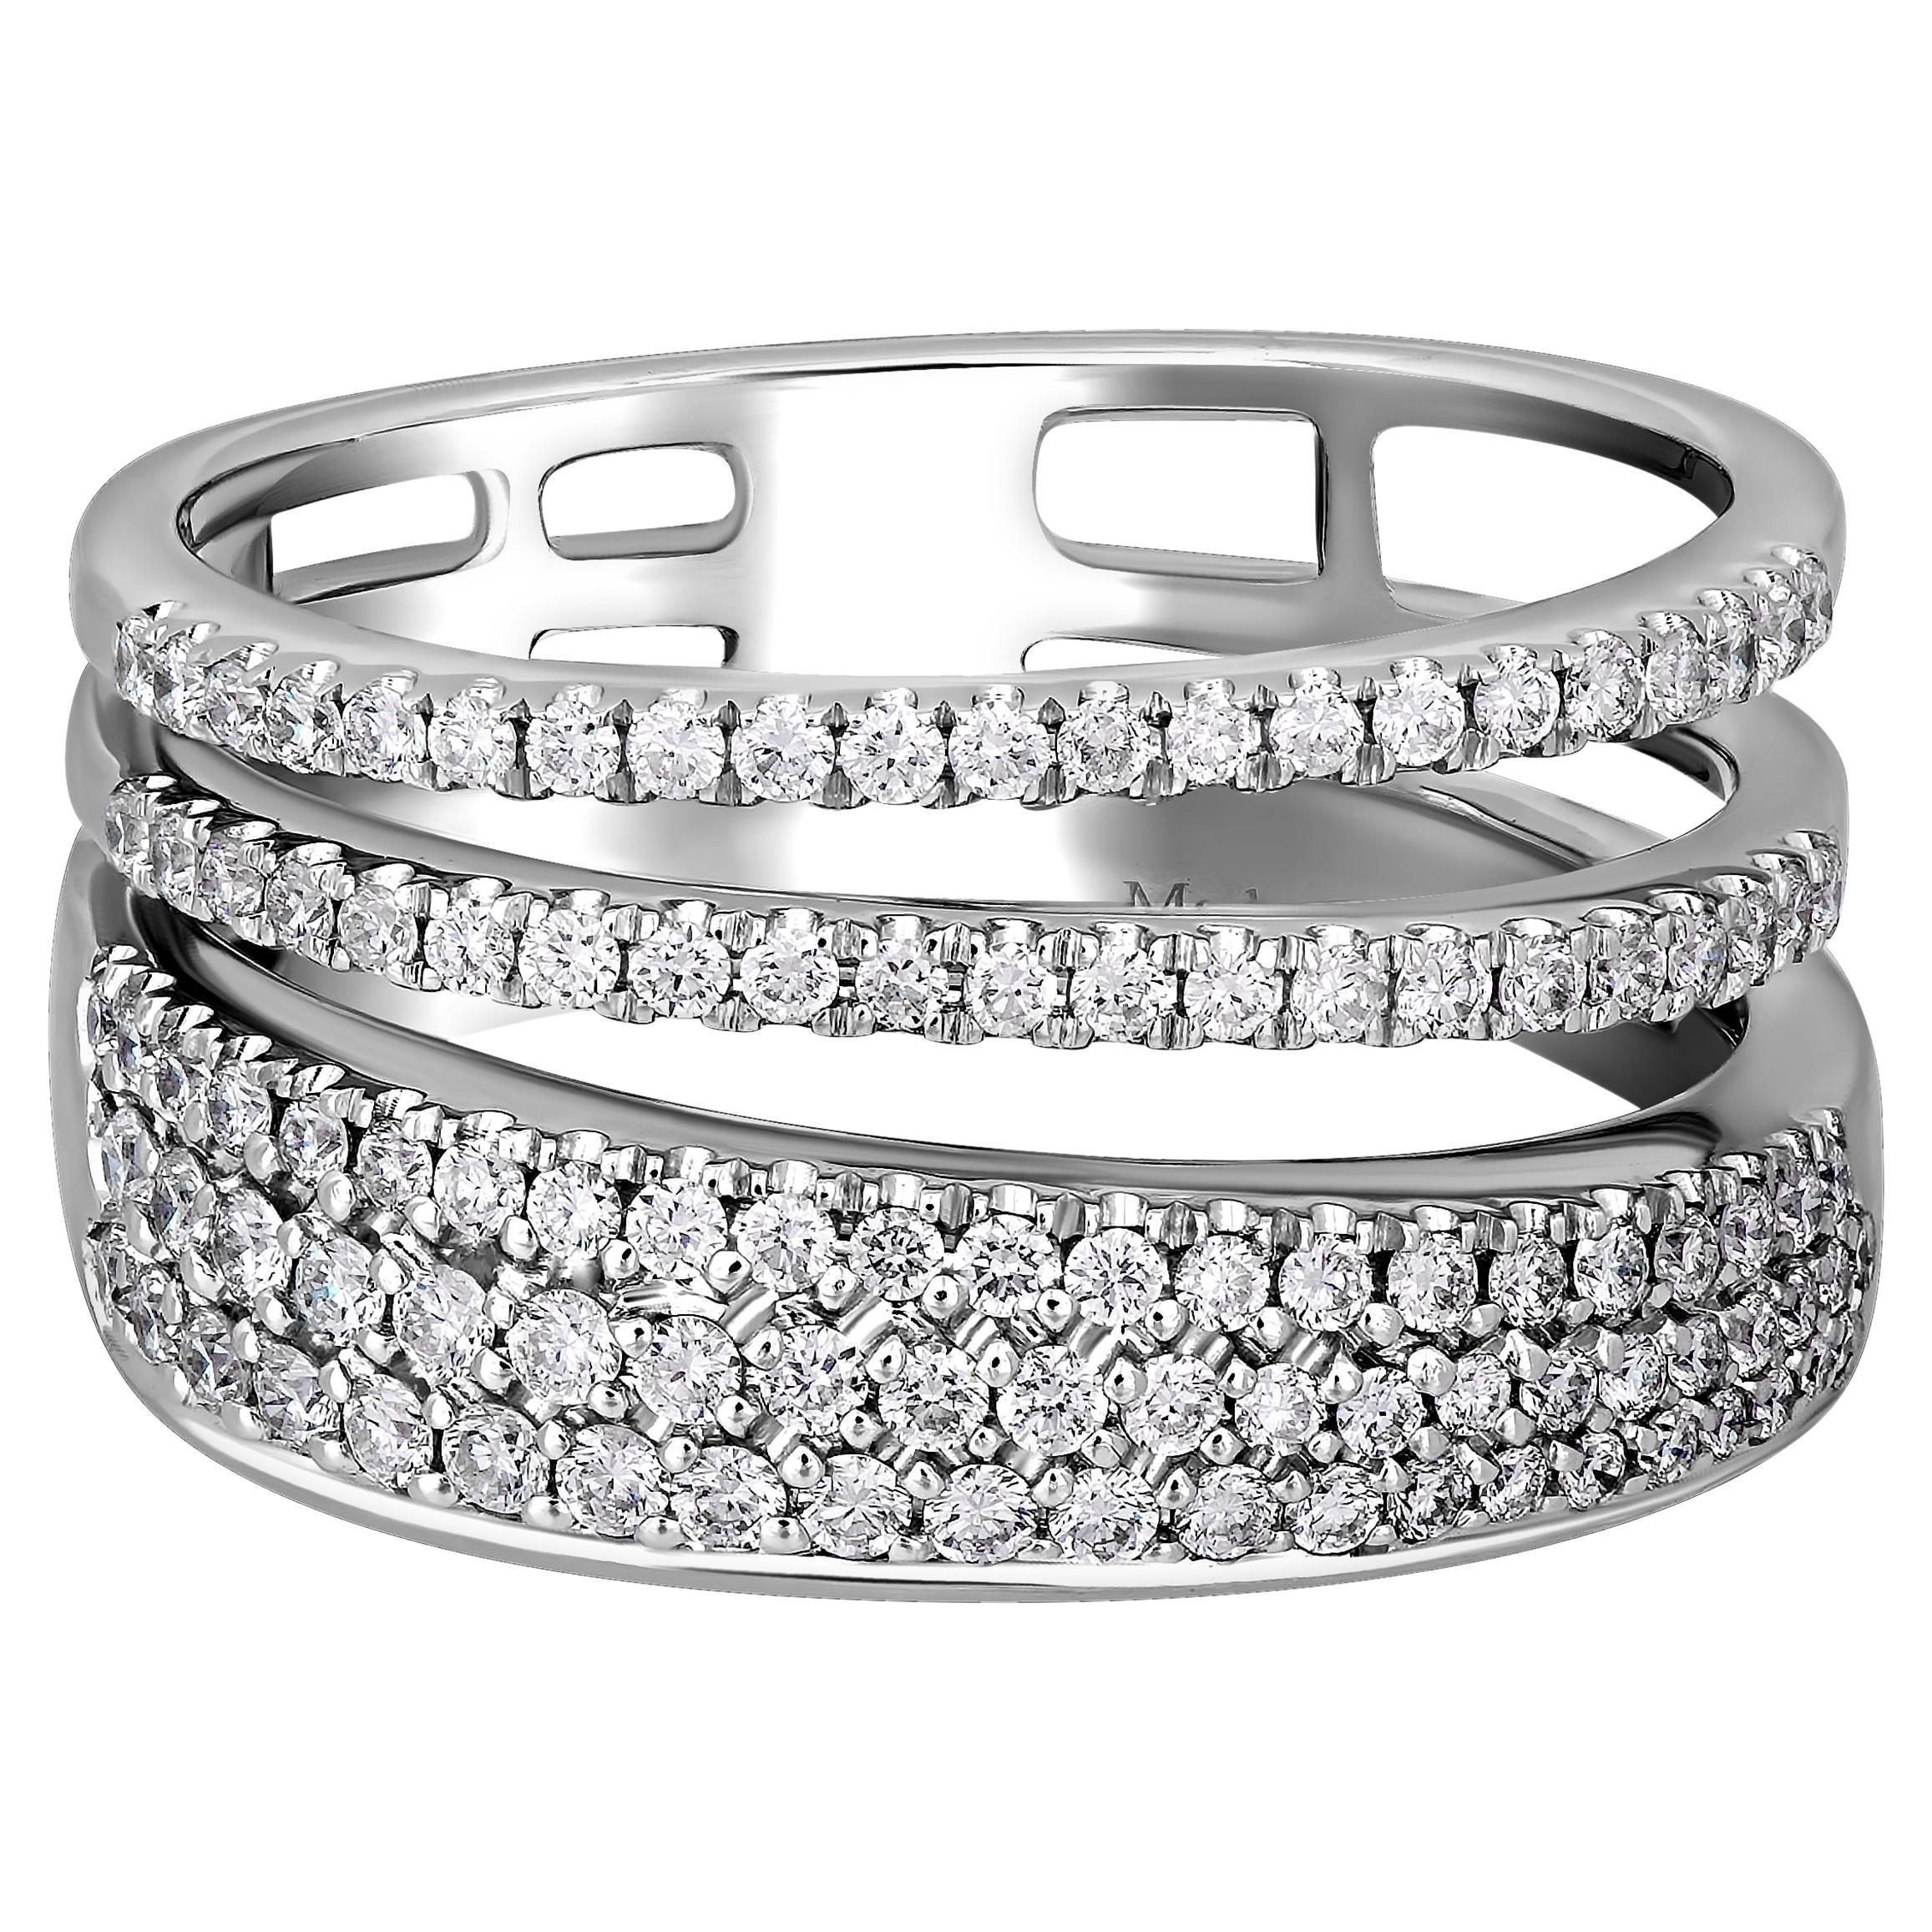 Salvini By Damiani Euforia S 18K White Gold Diamond Ring Sz. 7.75 For Sale